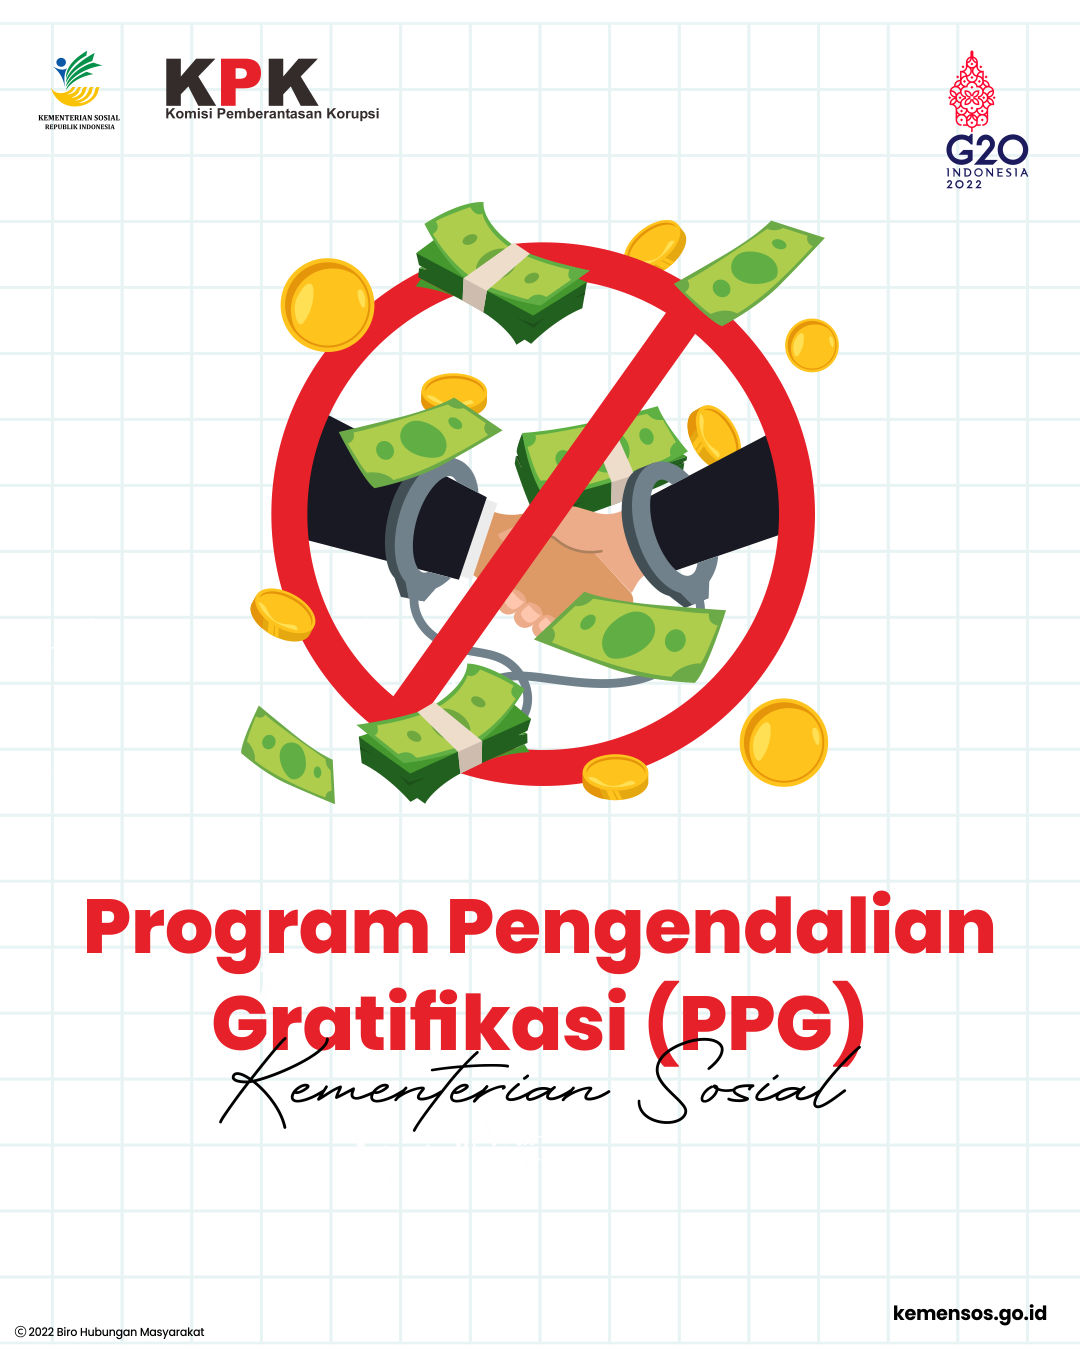 Program Pengendalian Gratifikasi (PPG) Kementerian Sosial